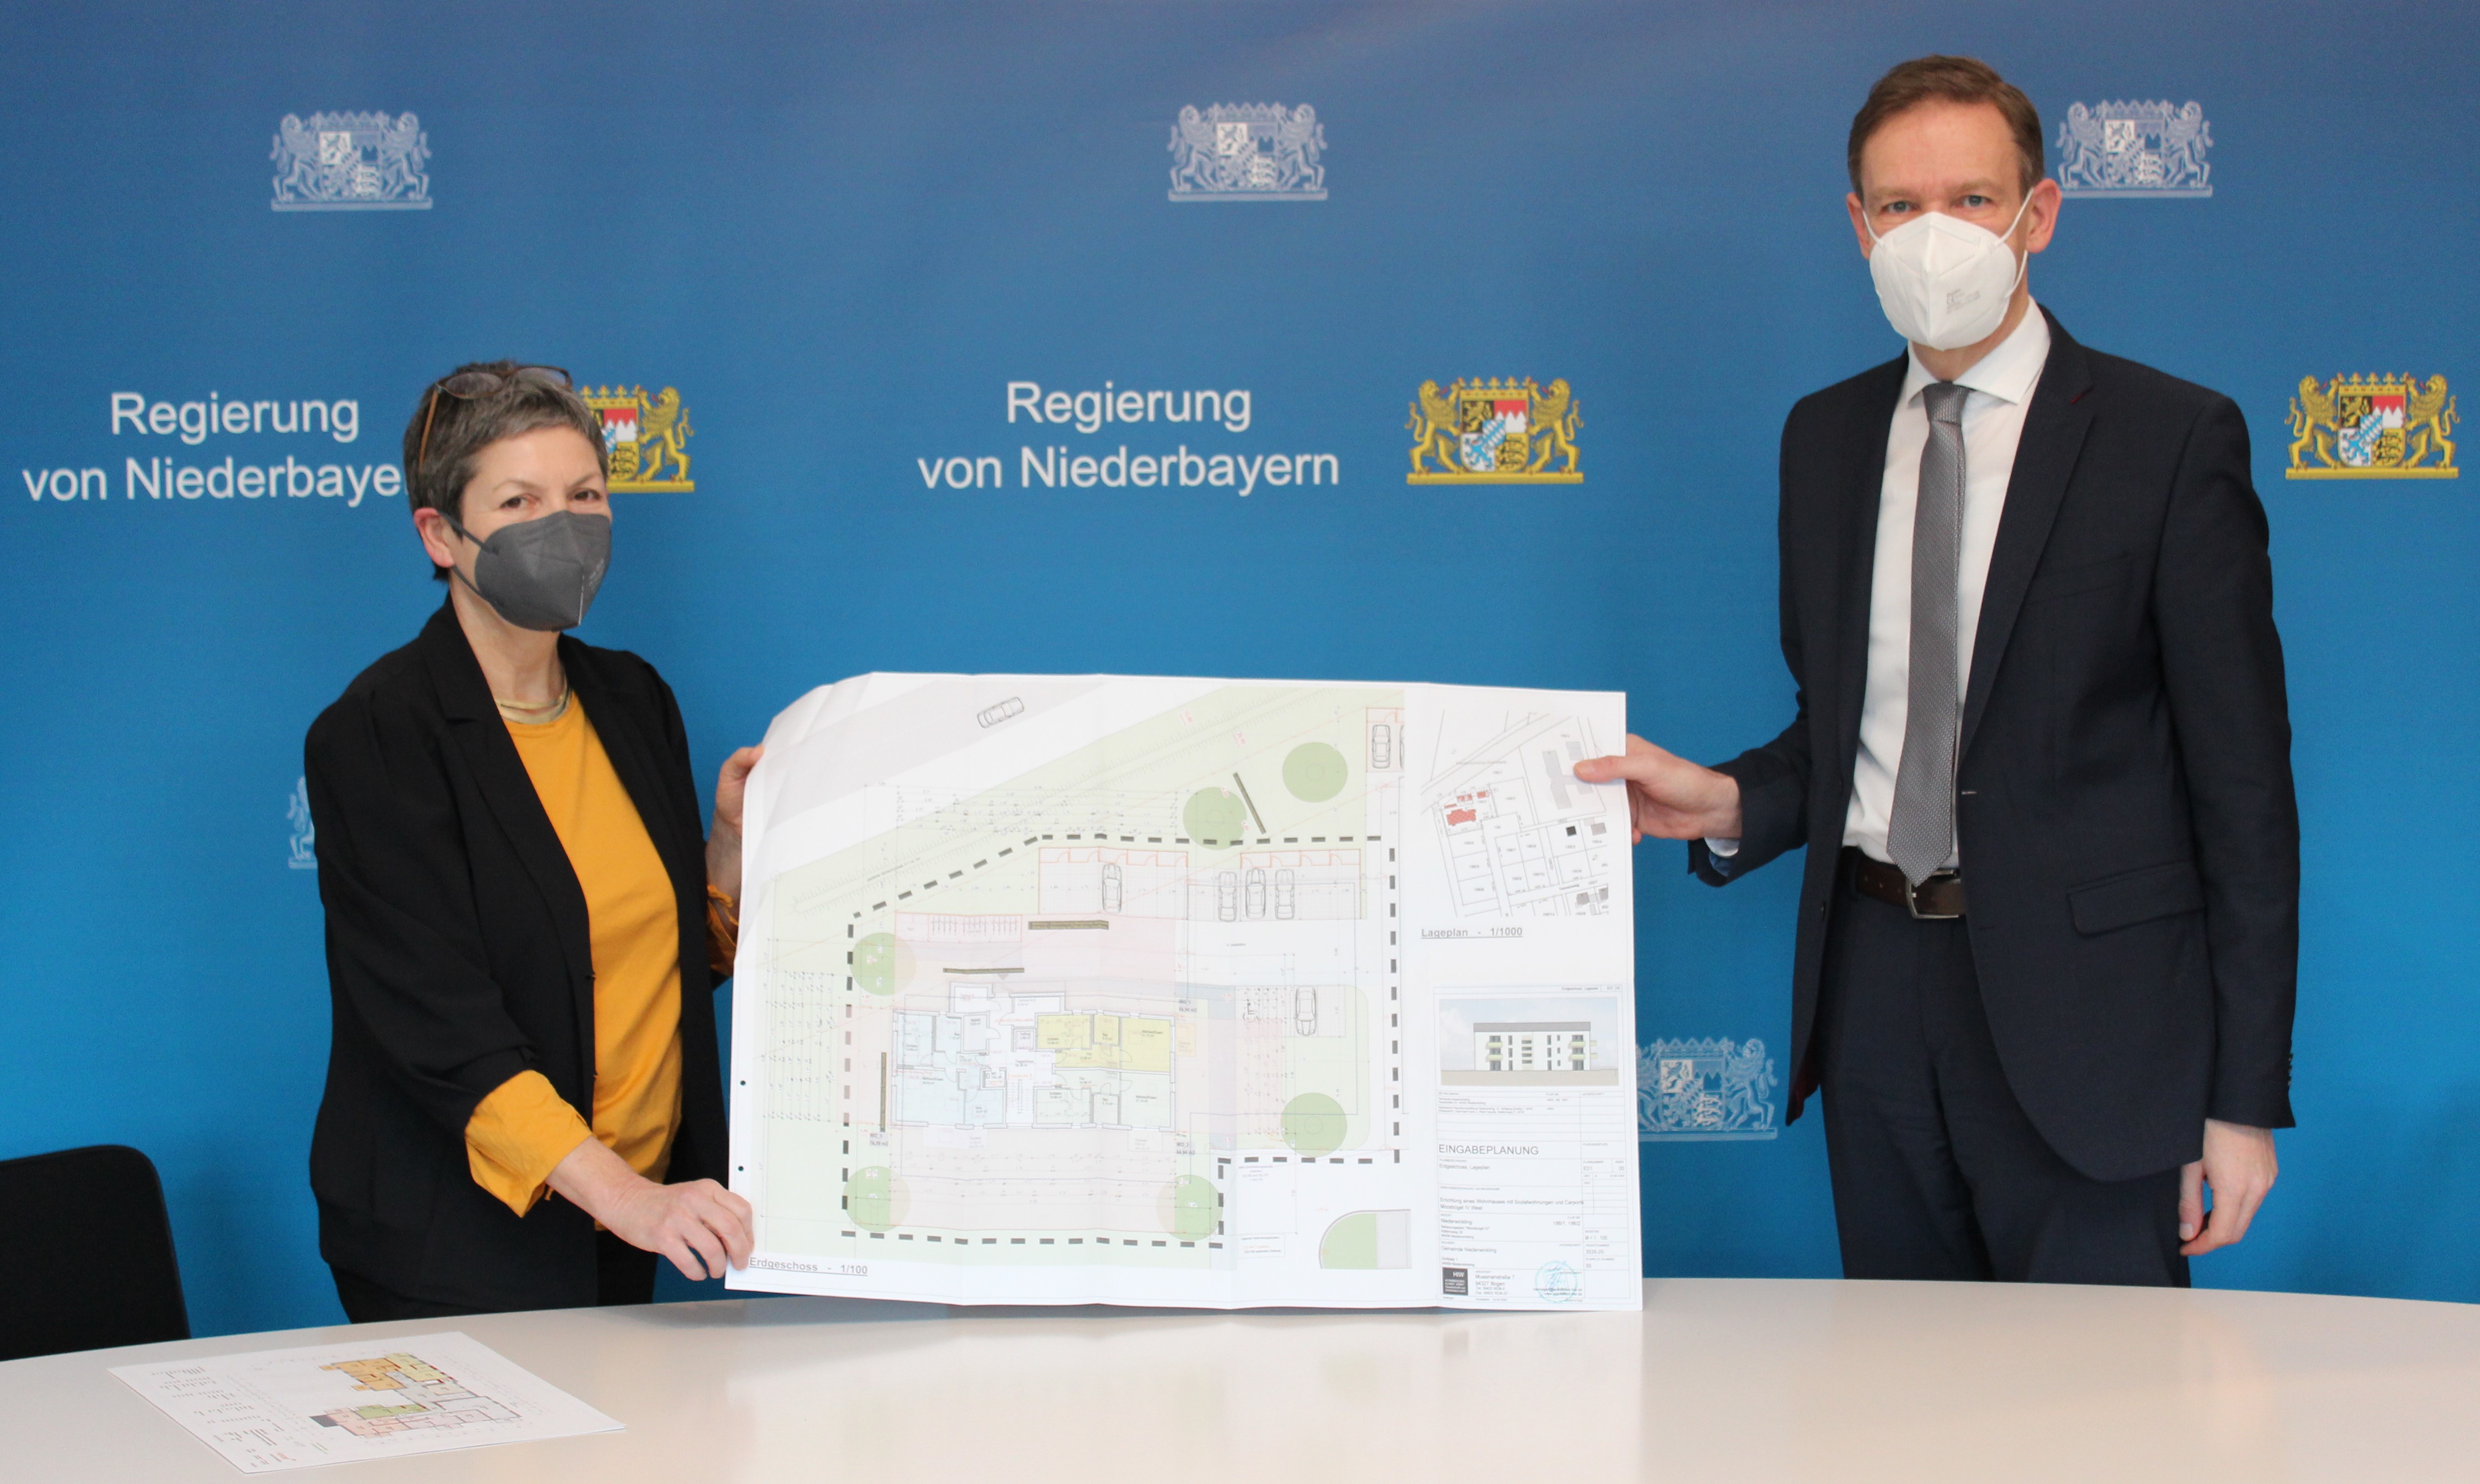 Regierungspräsident Rainer Haselbeck und Doris Reuschl, Leiterin des Sachgebiets Wohnungswesen der Regierung, besprechen die Situation der Wohnraumförderung in Niederbayern.